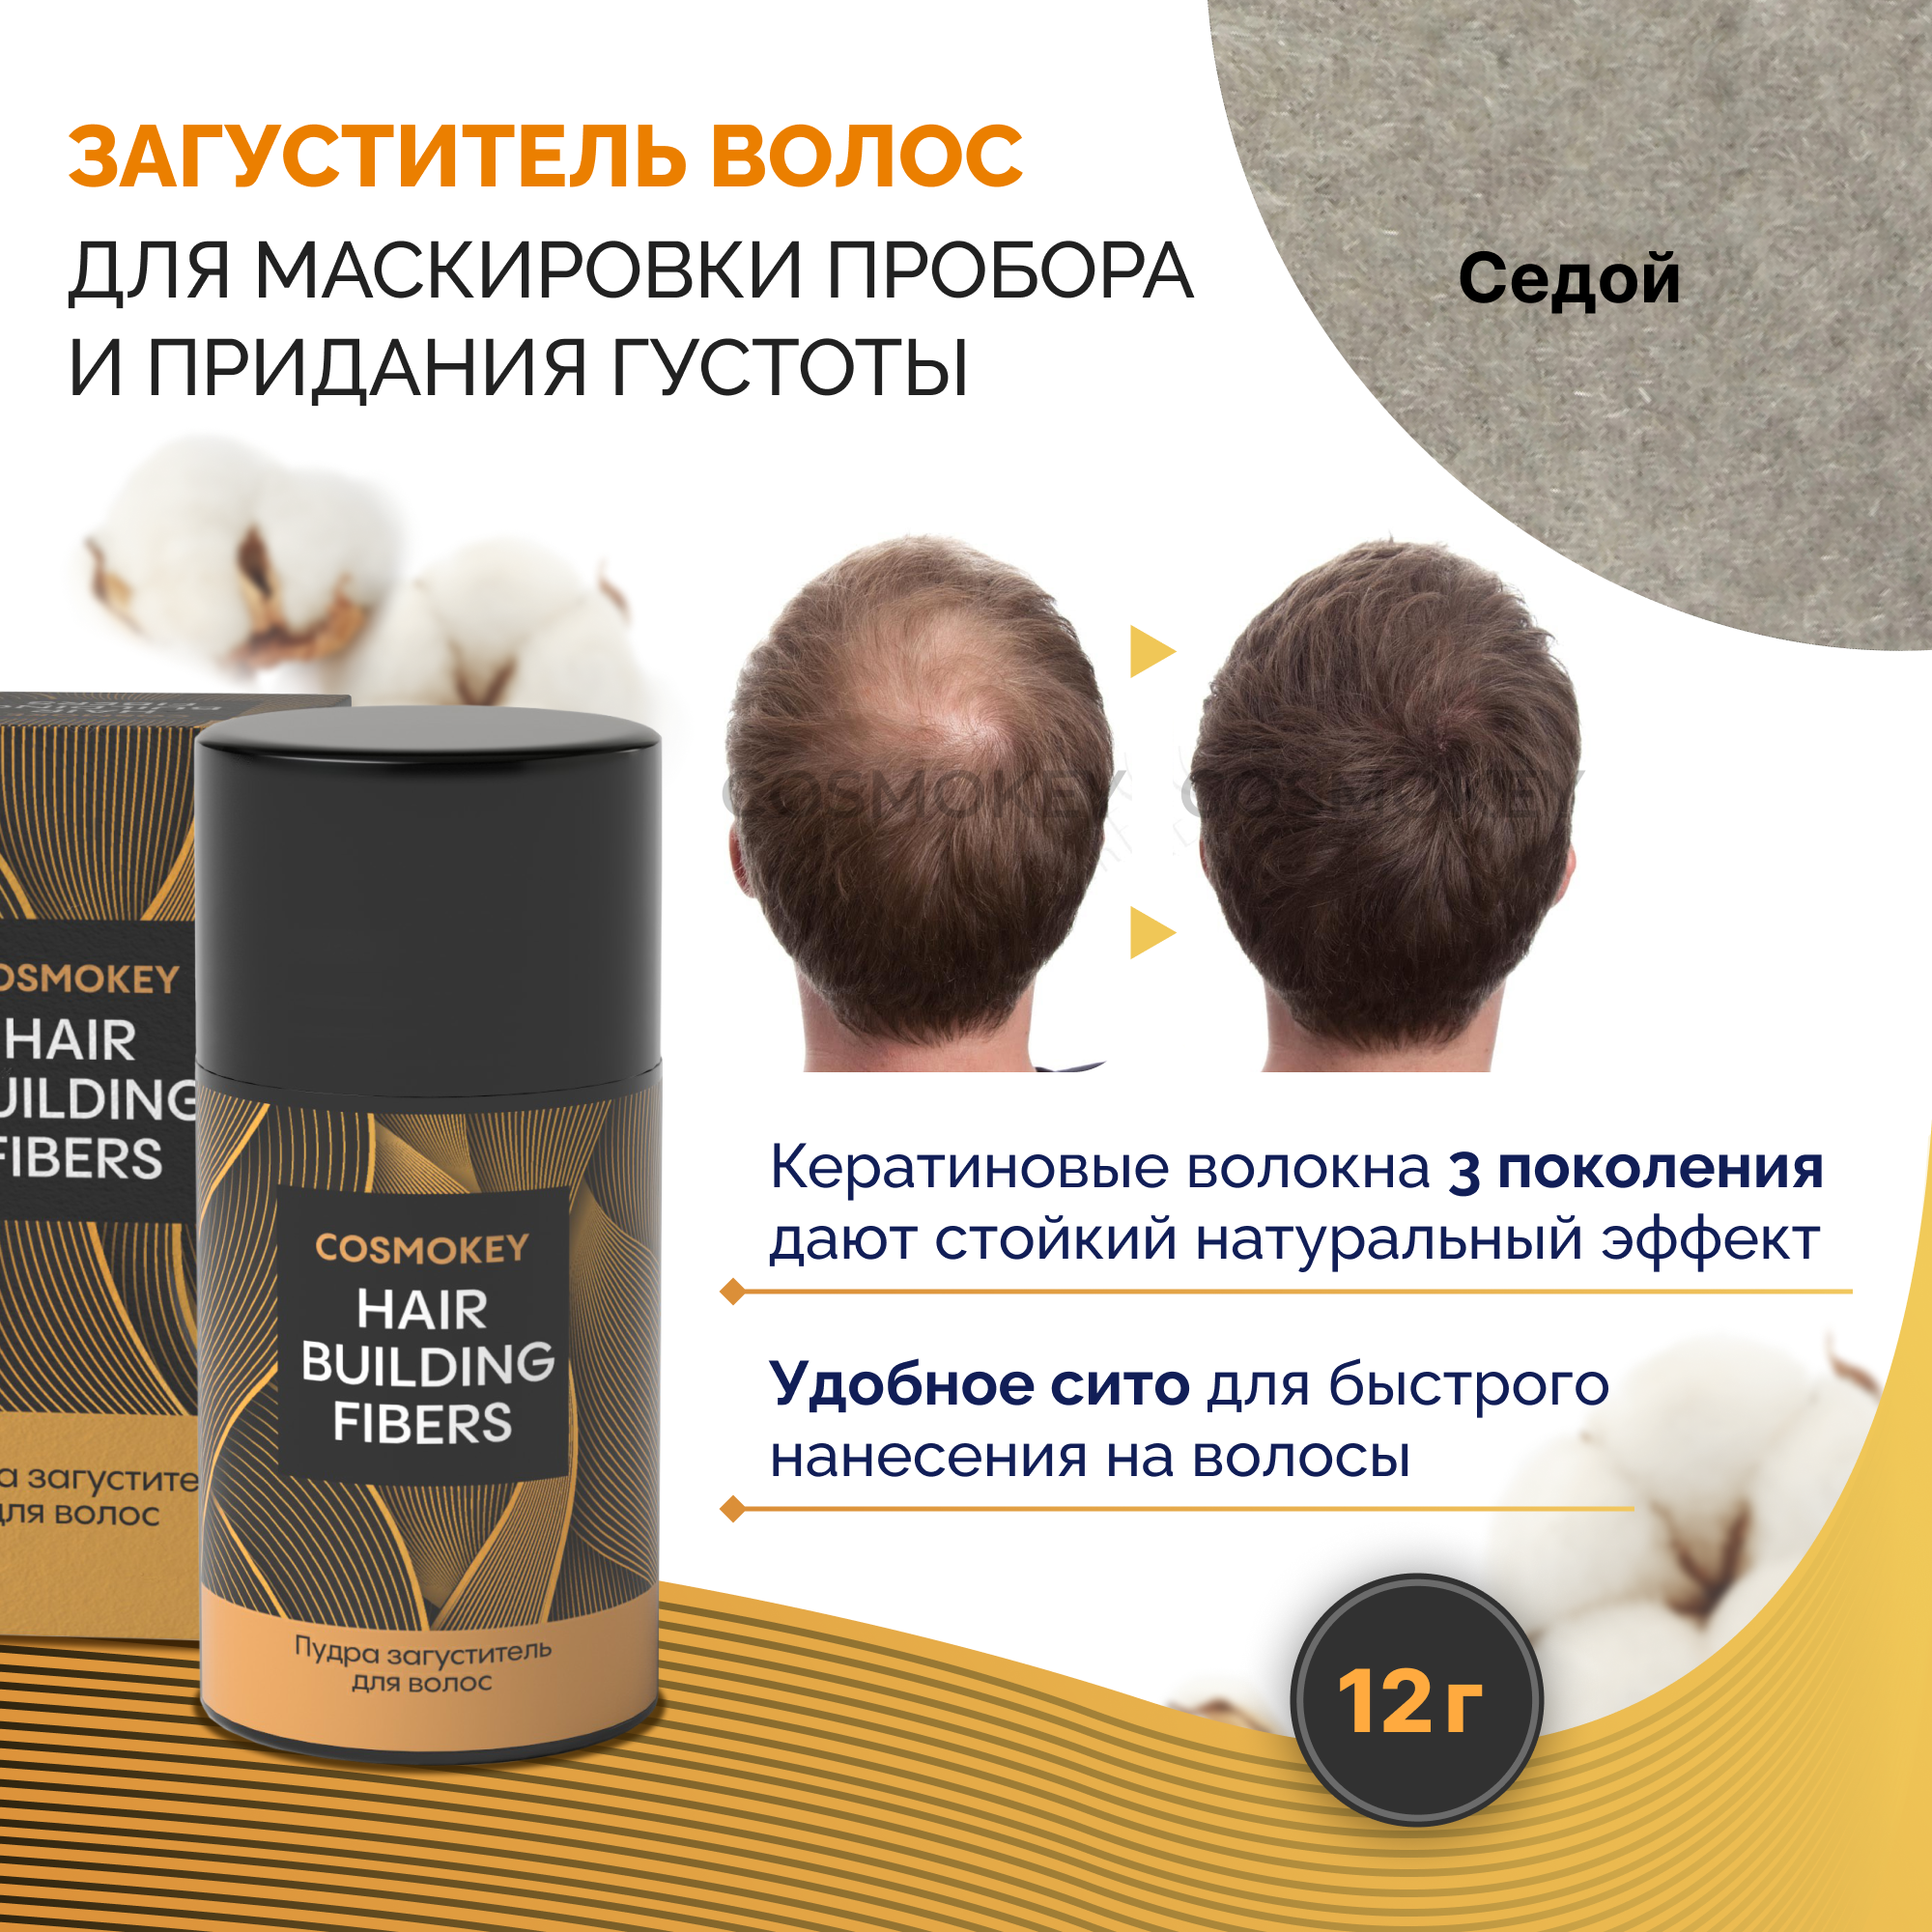 Загуститель-камуфляж для волос Cosmokey Космокей седой grey 12 г загуститель для волос sevich рефил седой 100 г